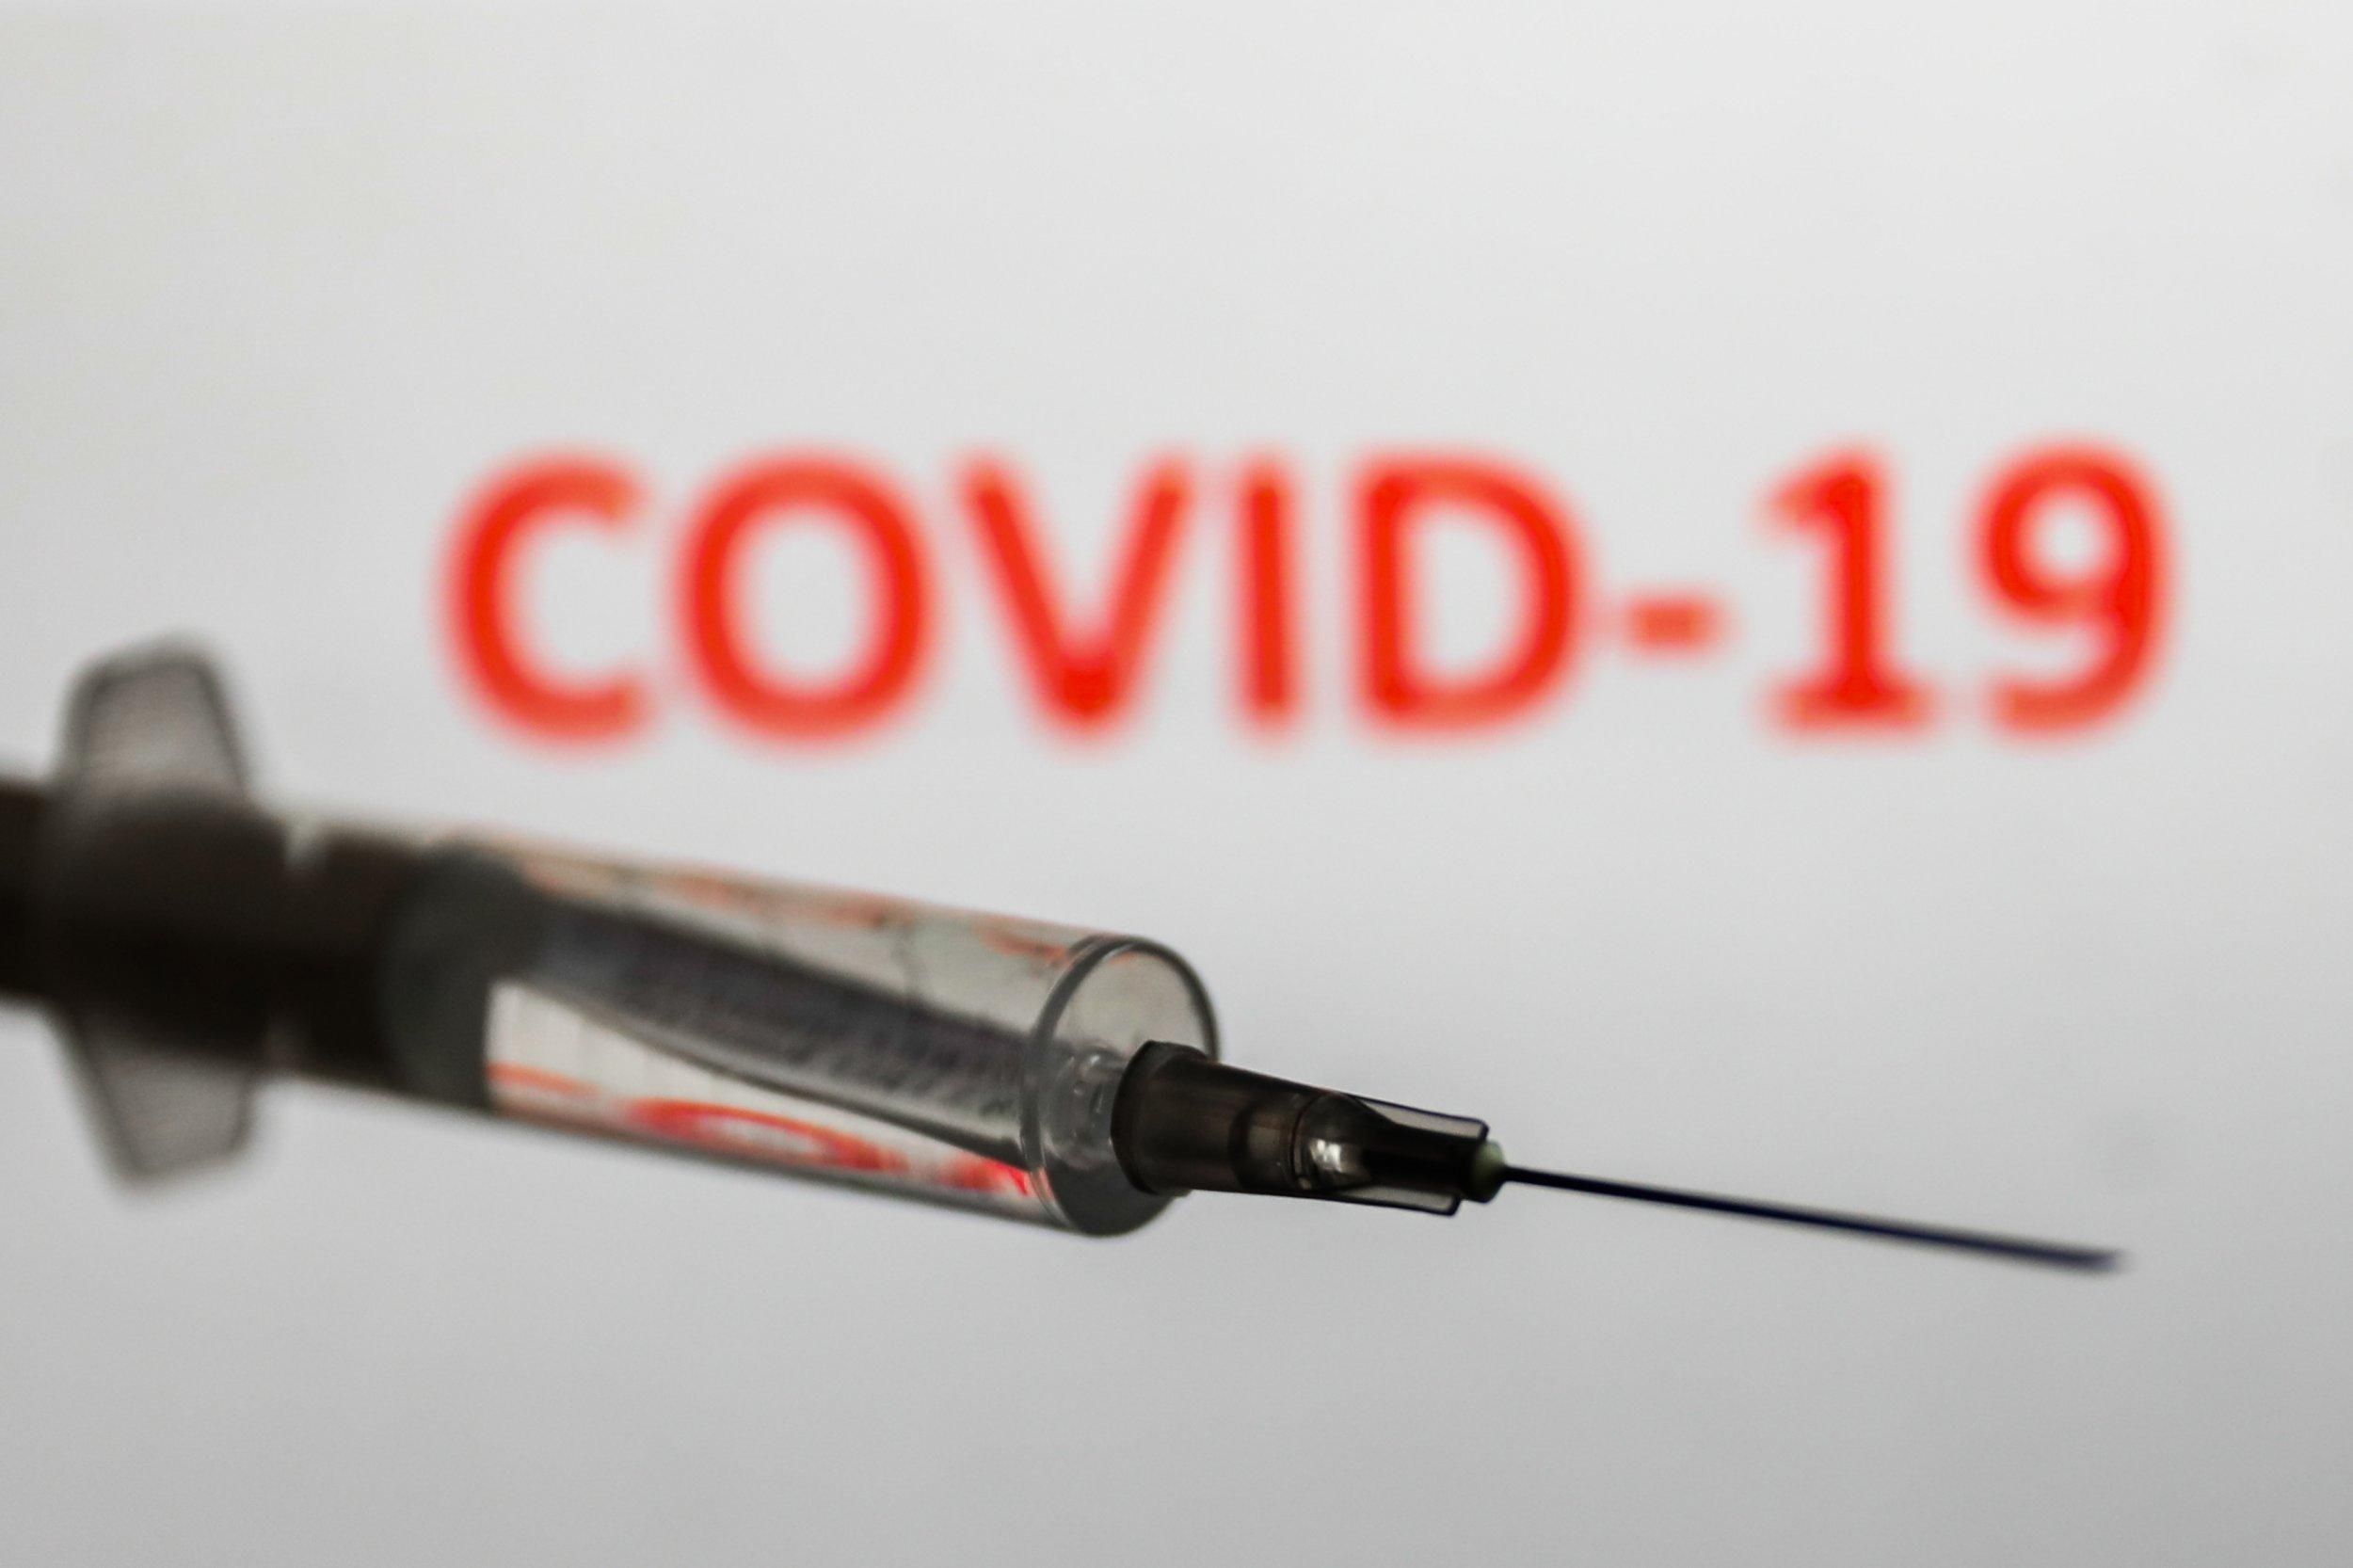 Третья доза COVID-вакцины показала высокую эффективность против штамма Дельта